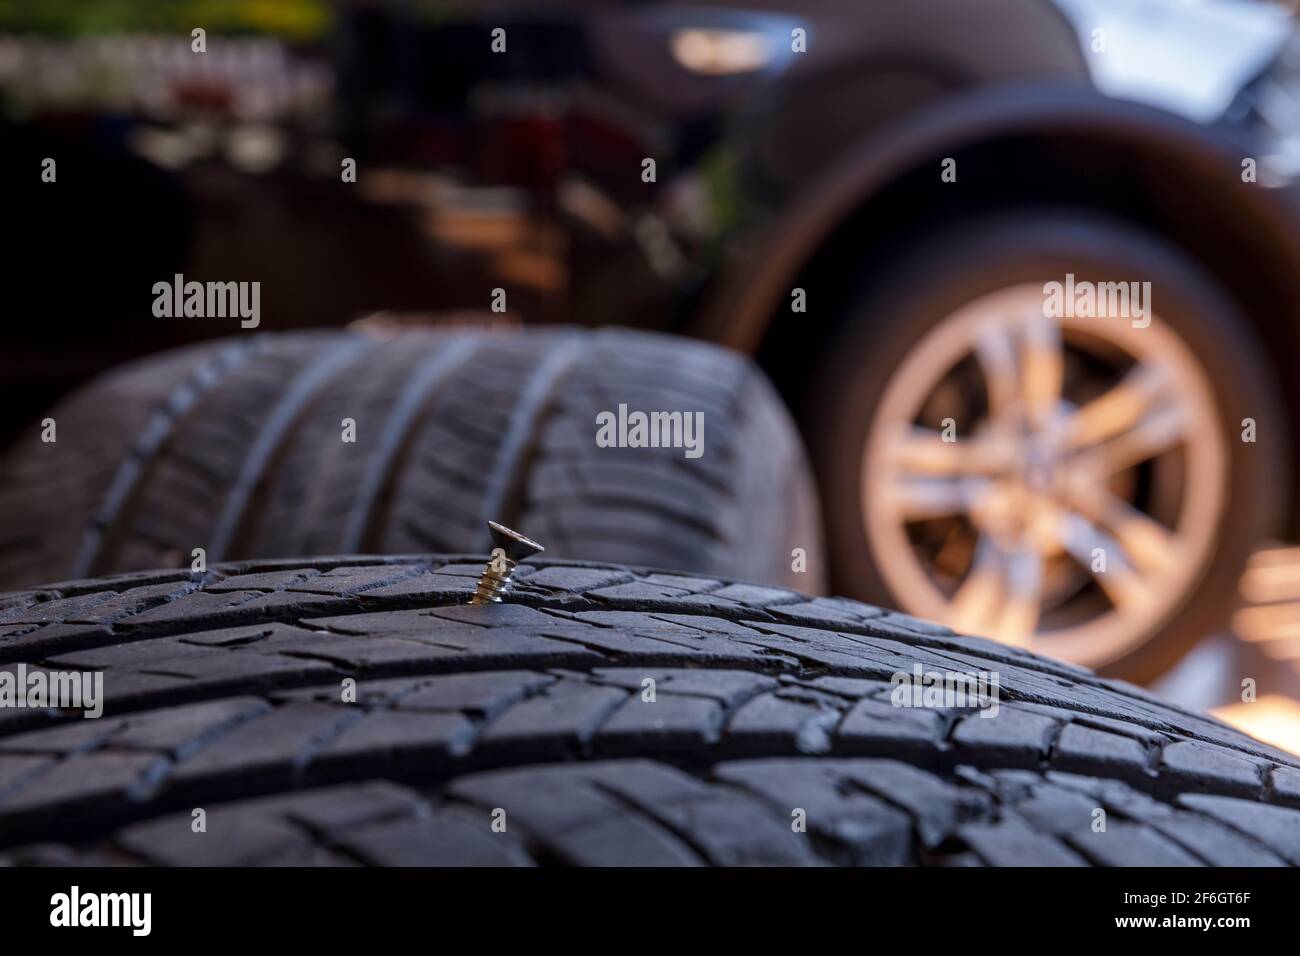 Nahaufnahme alten Reifen haben Nägel Mutter oder Schraubenantrieb in der  Seite klemmt. Reifenwerkstatt und altes Rad am Auto wechseln. Gebrauchte  Autoreifen in Stapeln am Reifen gestapelt Stockfotografie - Alamy